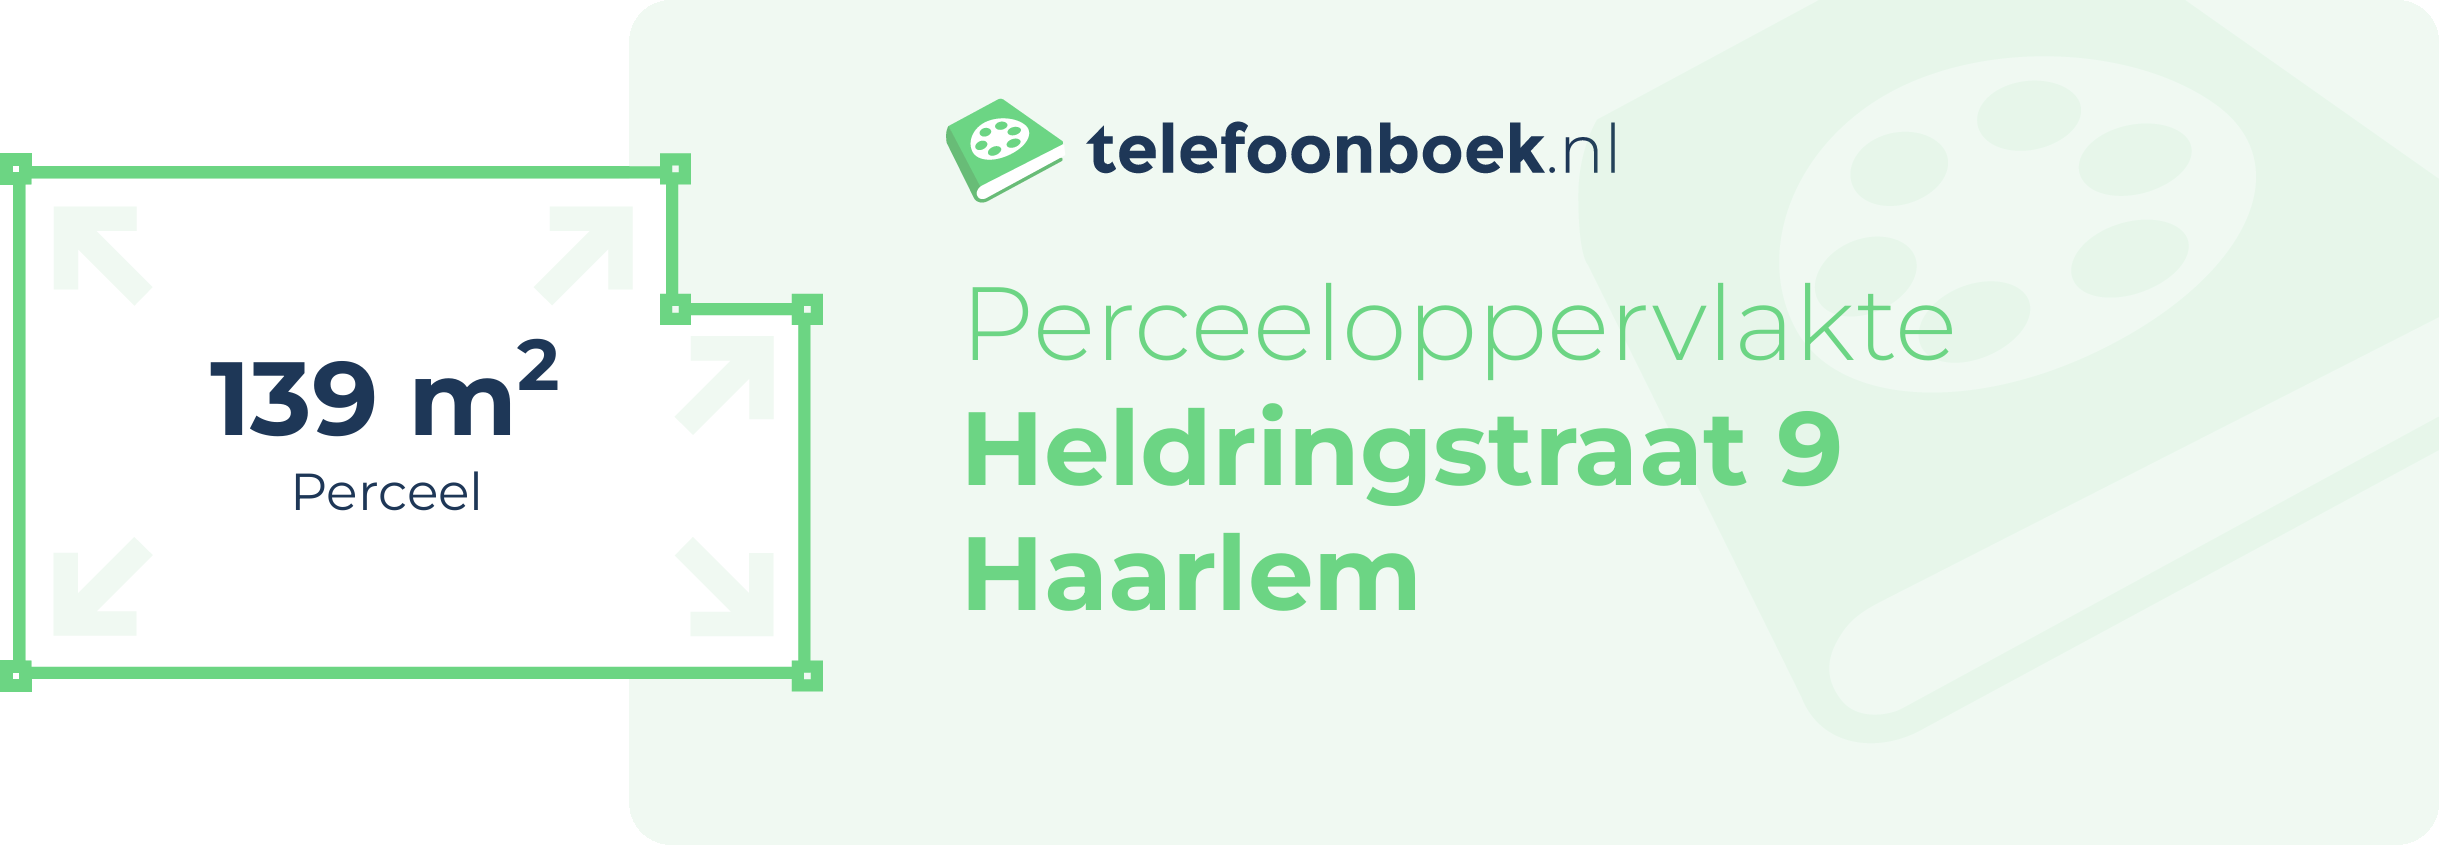 Perceeloppervlakte Heldringstraat 9 Haarlem